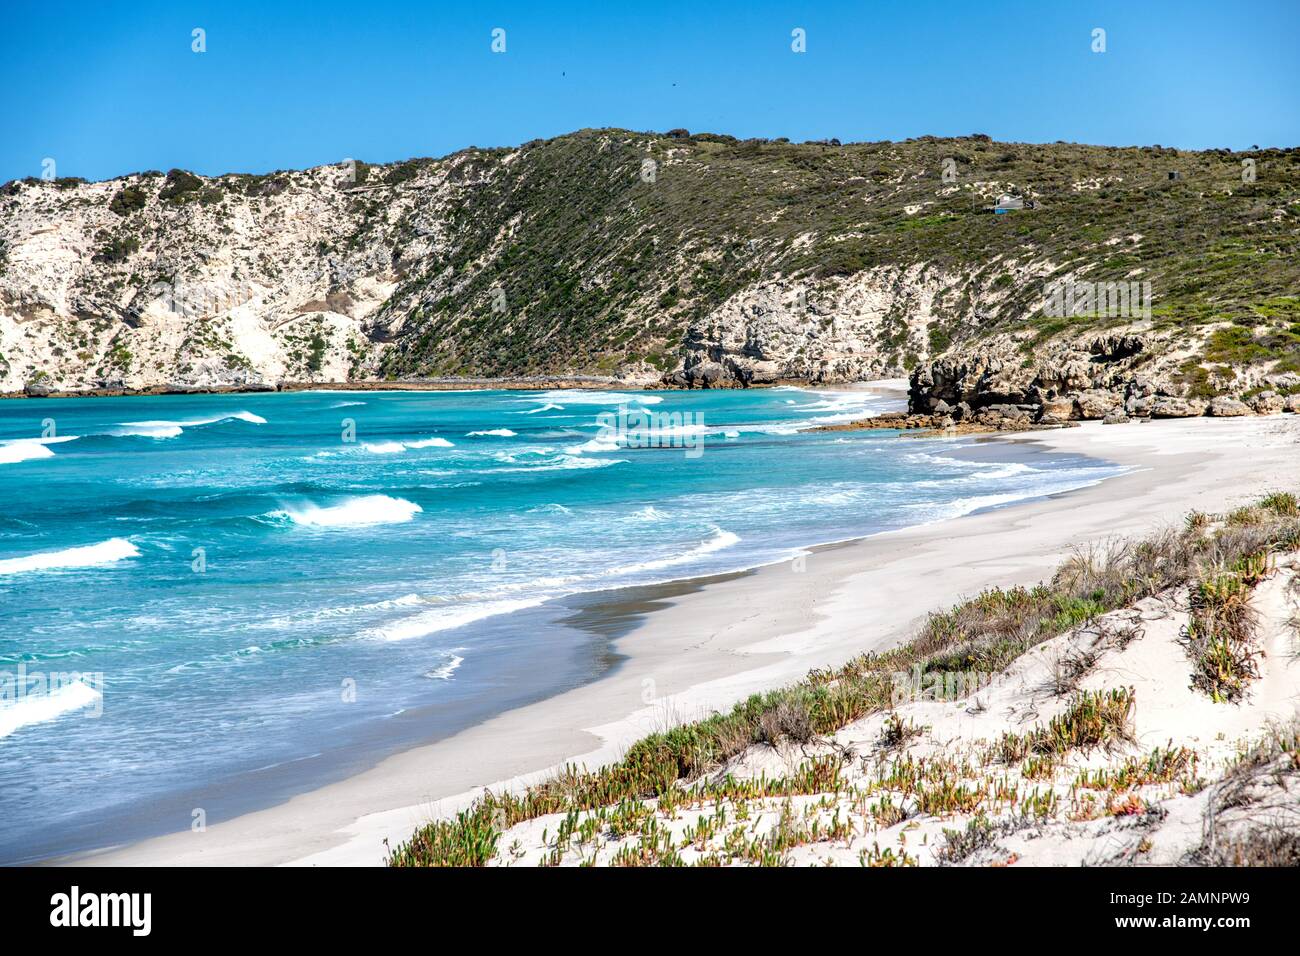 Pennington Bay Beach in Kangaroo Island, Australia. Stock Photo